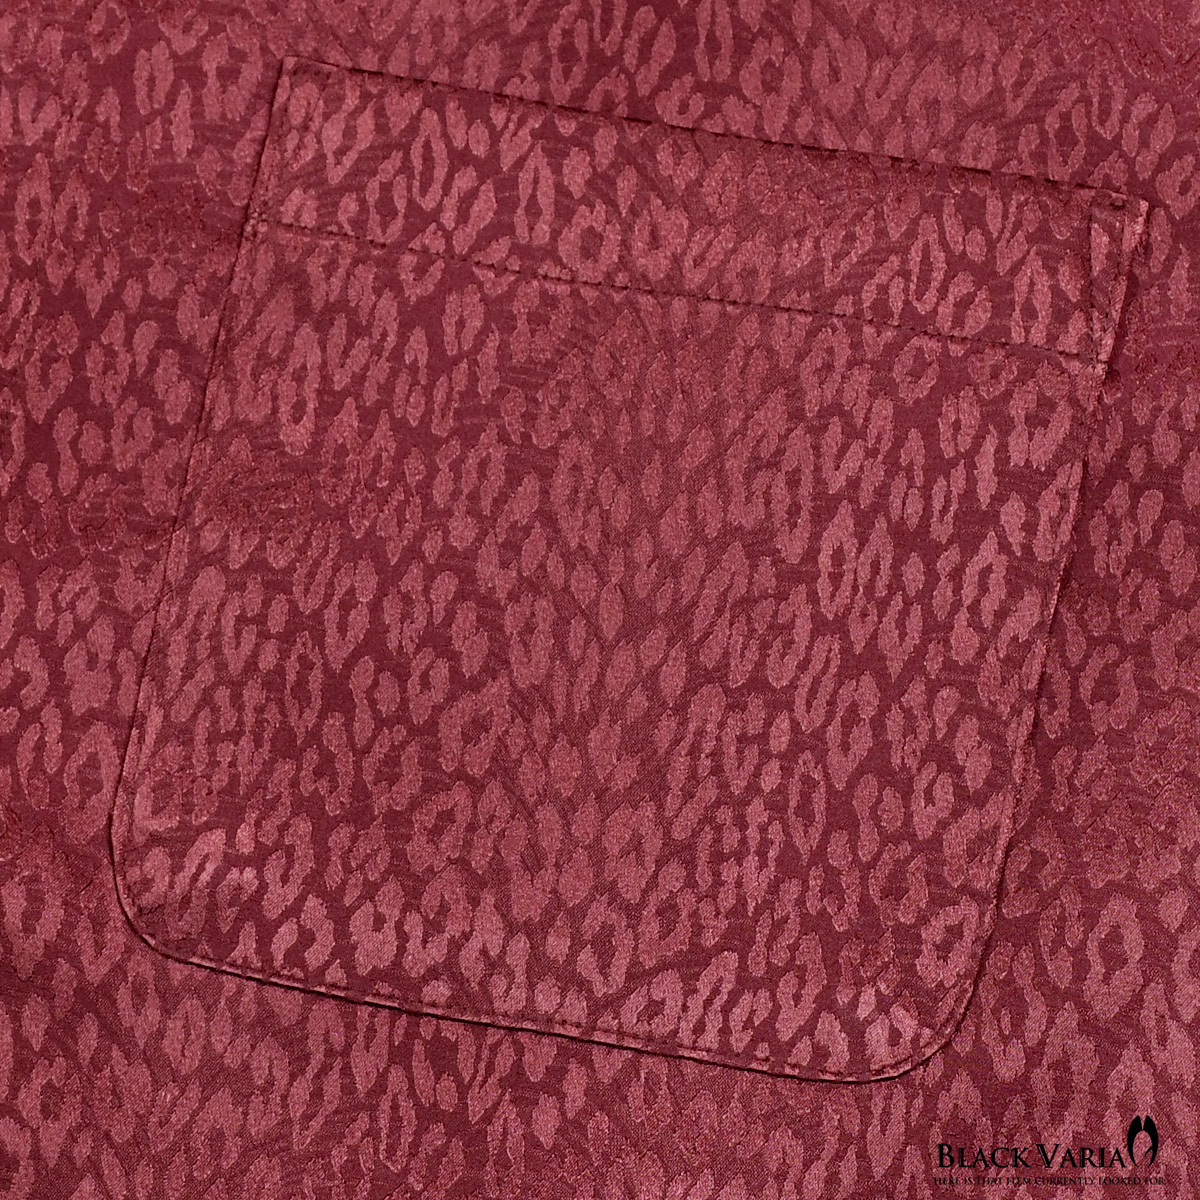 181710-wn BLACK VARIA ドゥエボットーニ ヒョウ柄 豹 ジャガード スナップダウン ドレスシャツ 日本製 メンズ(ワインレッド赤) 3L 派手_画像3